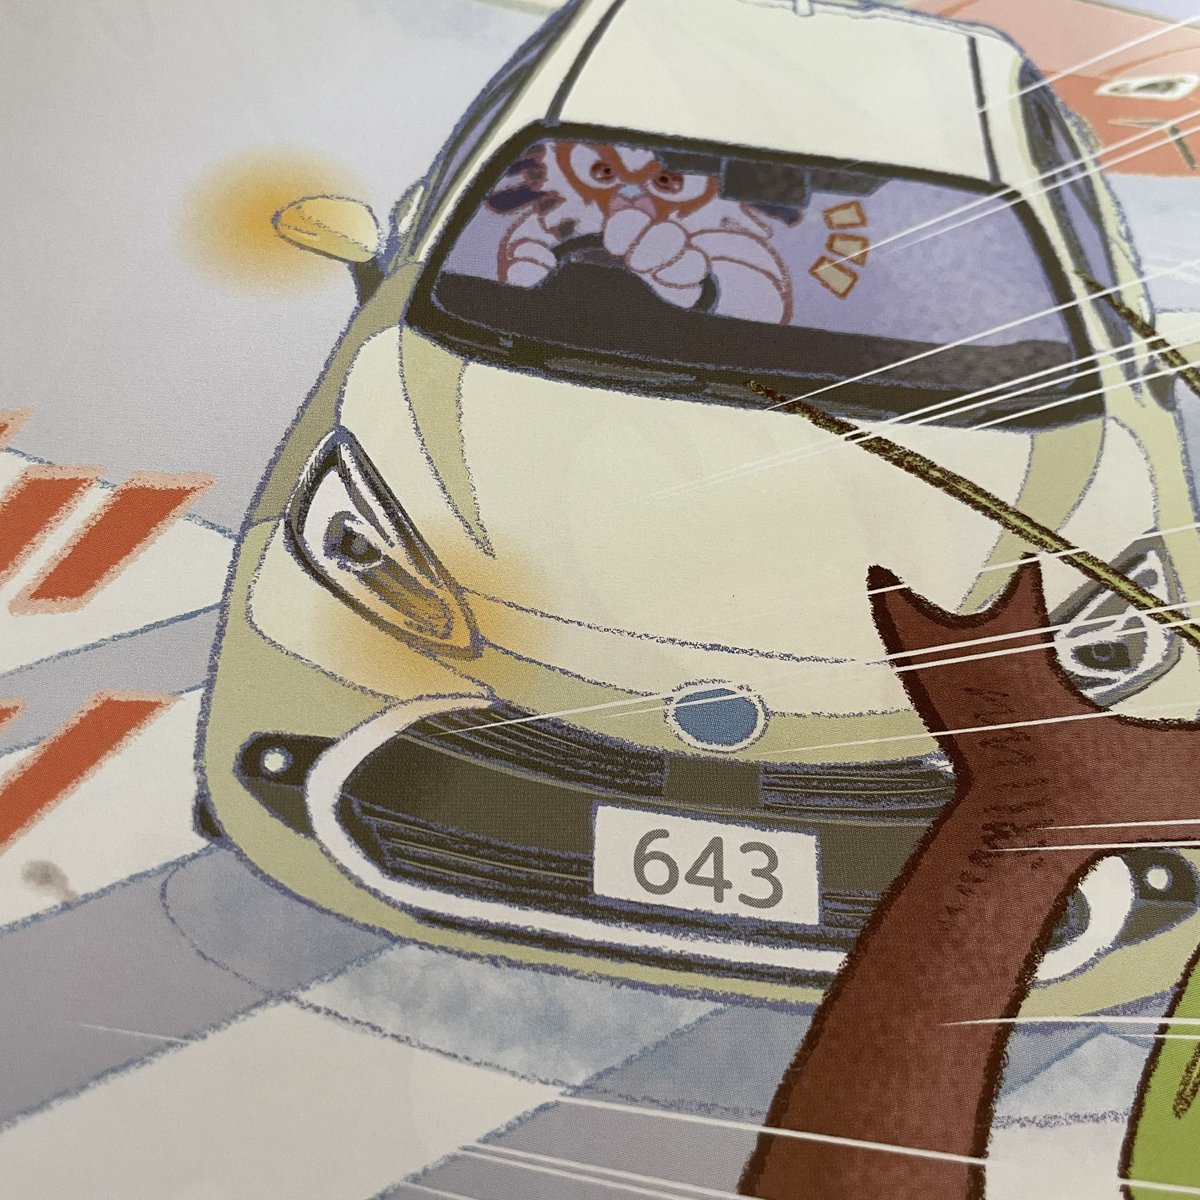 子どもの保育園で配られた交通安全本…………。 明らかにトヨタ車の啓発かっていう本のナンバーがなんだよこれ？って思ってたんだけど。 クックパパ(主人公のヒヨコがクック)と、「虫さん」(昆虫博覧会に行く)か？